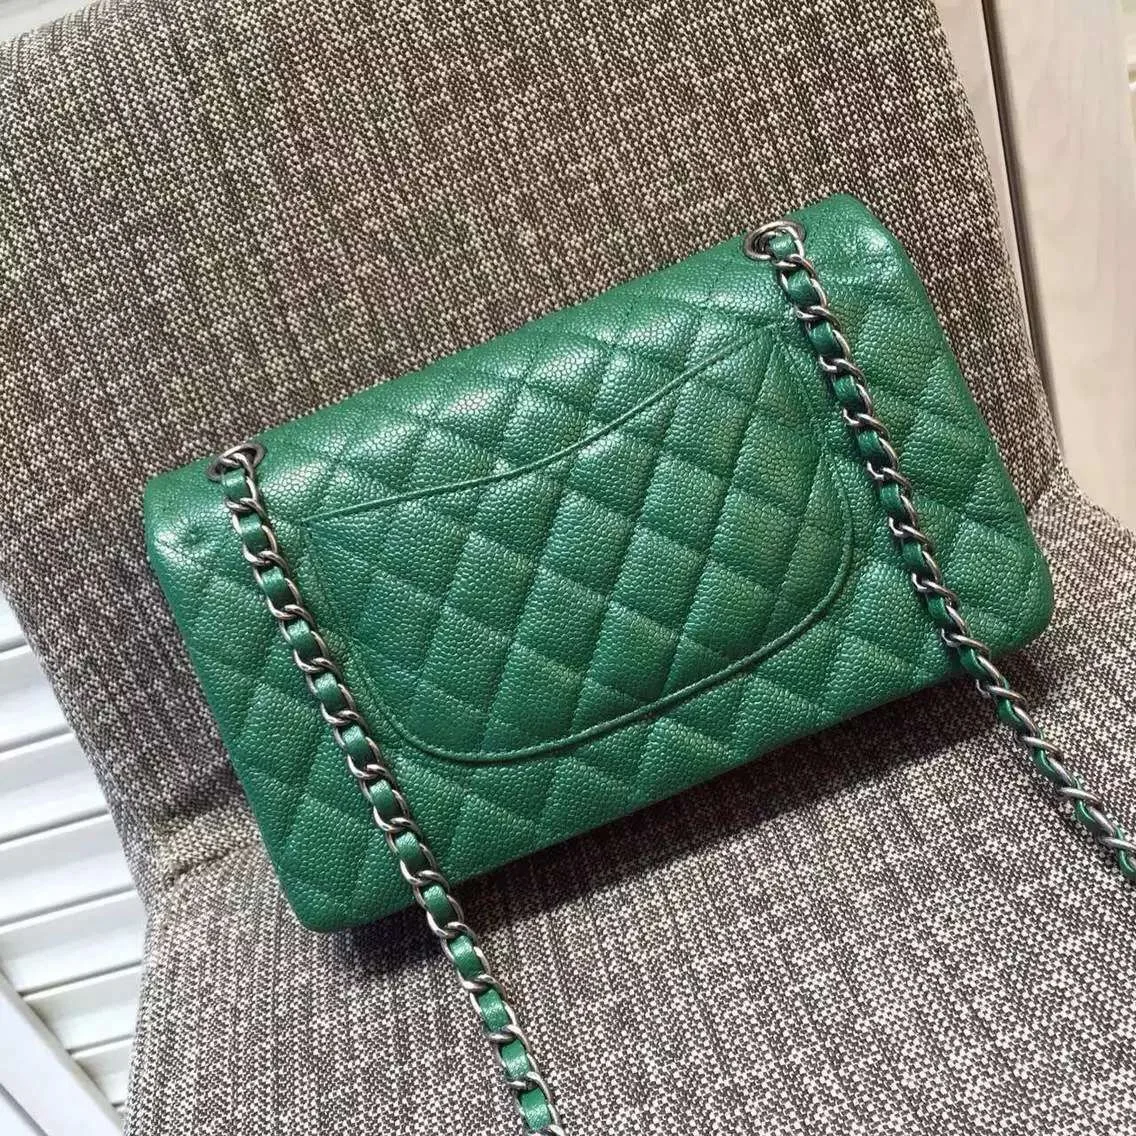 Фото Женский бренд CC классический CF 2 55 зеленый ягненка Икра Jumbo лоскут сумки Золотая